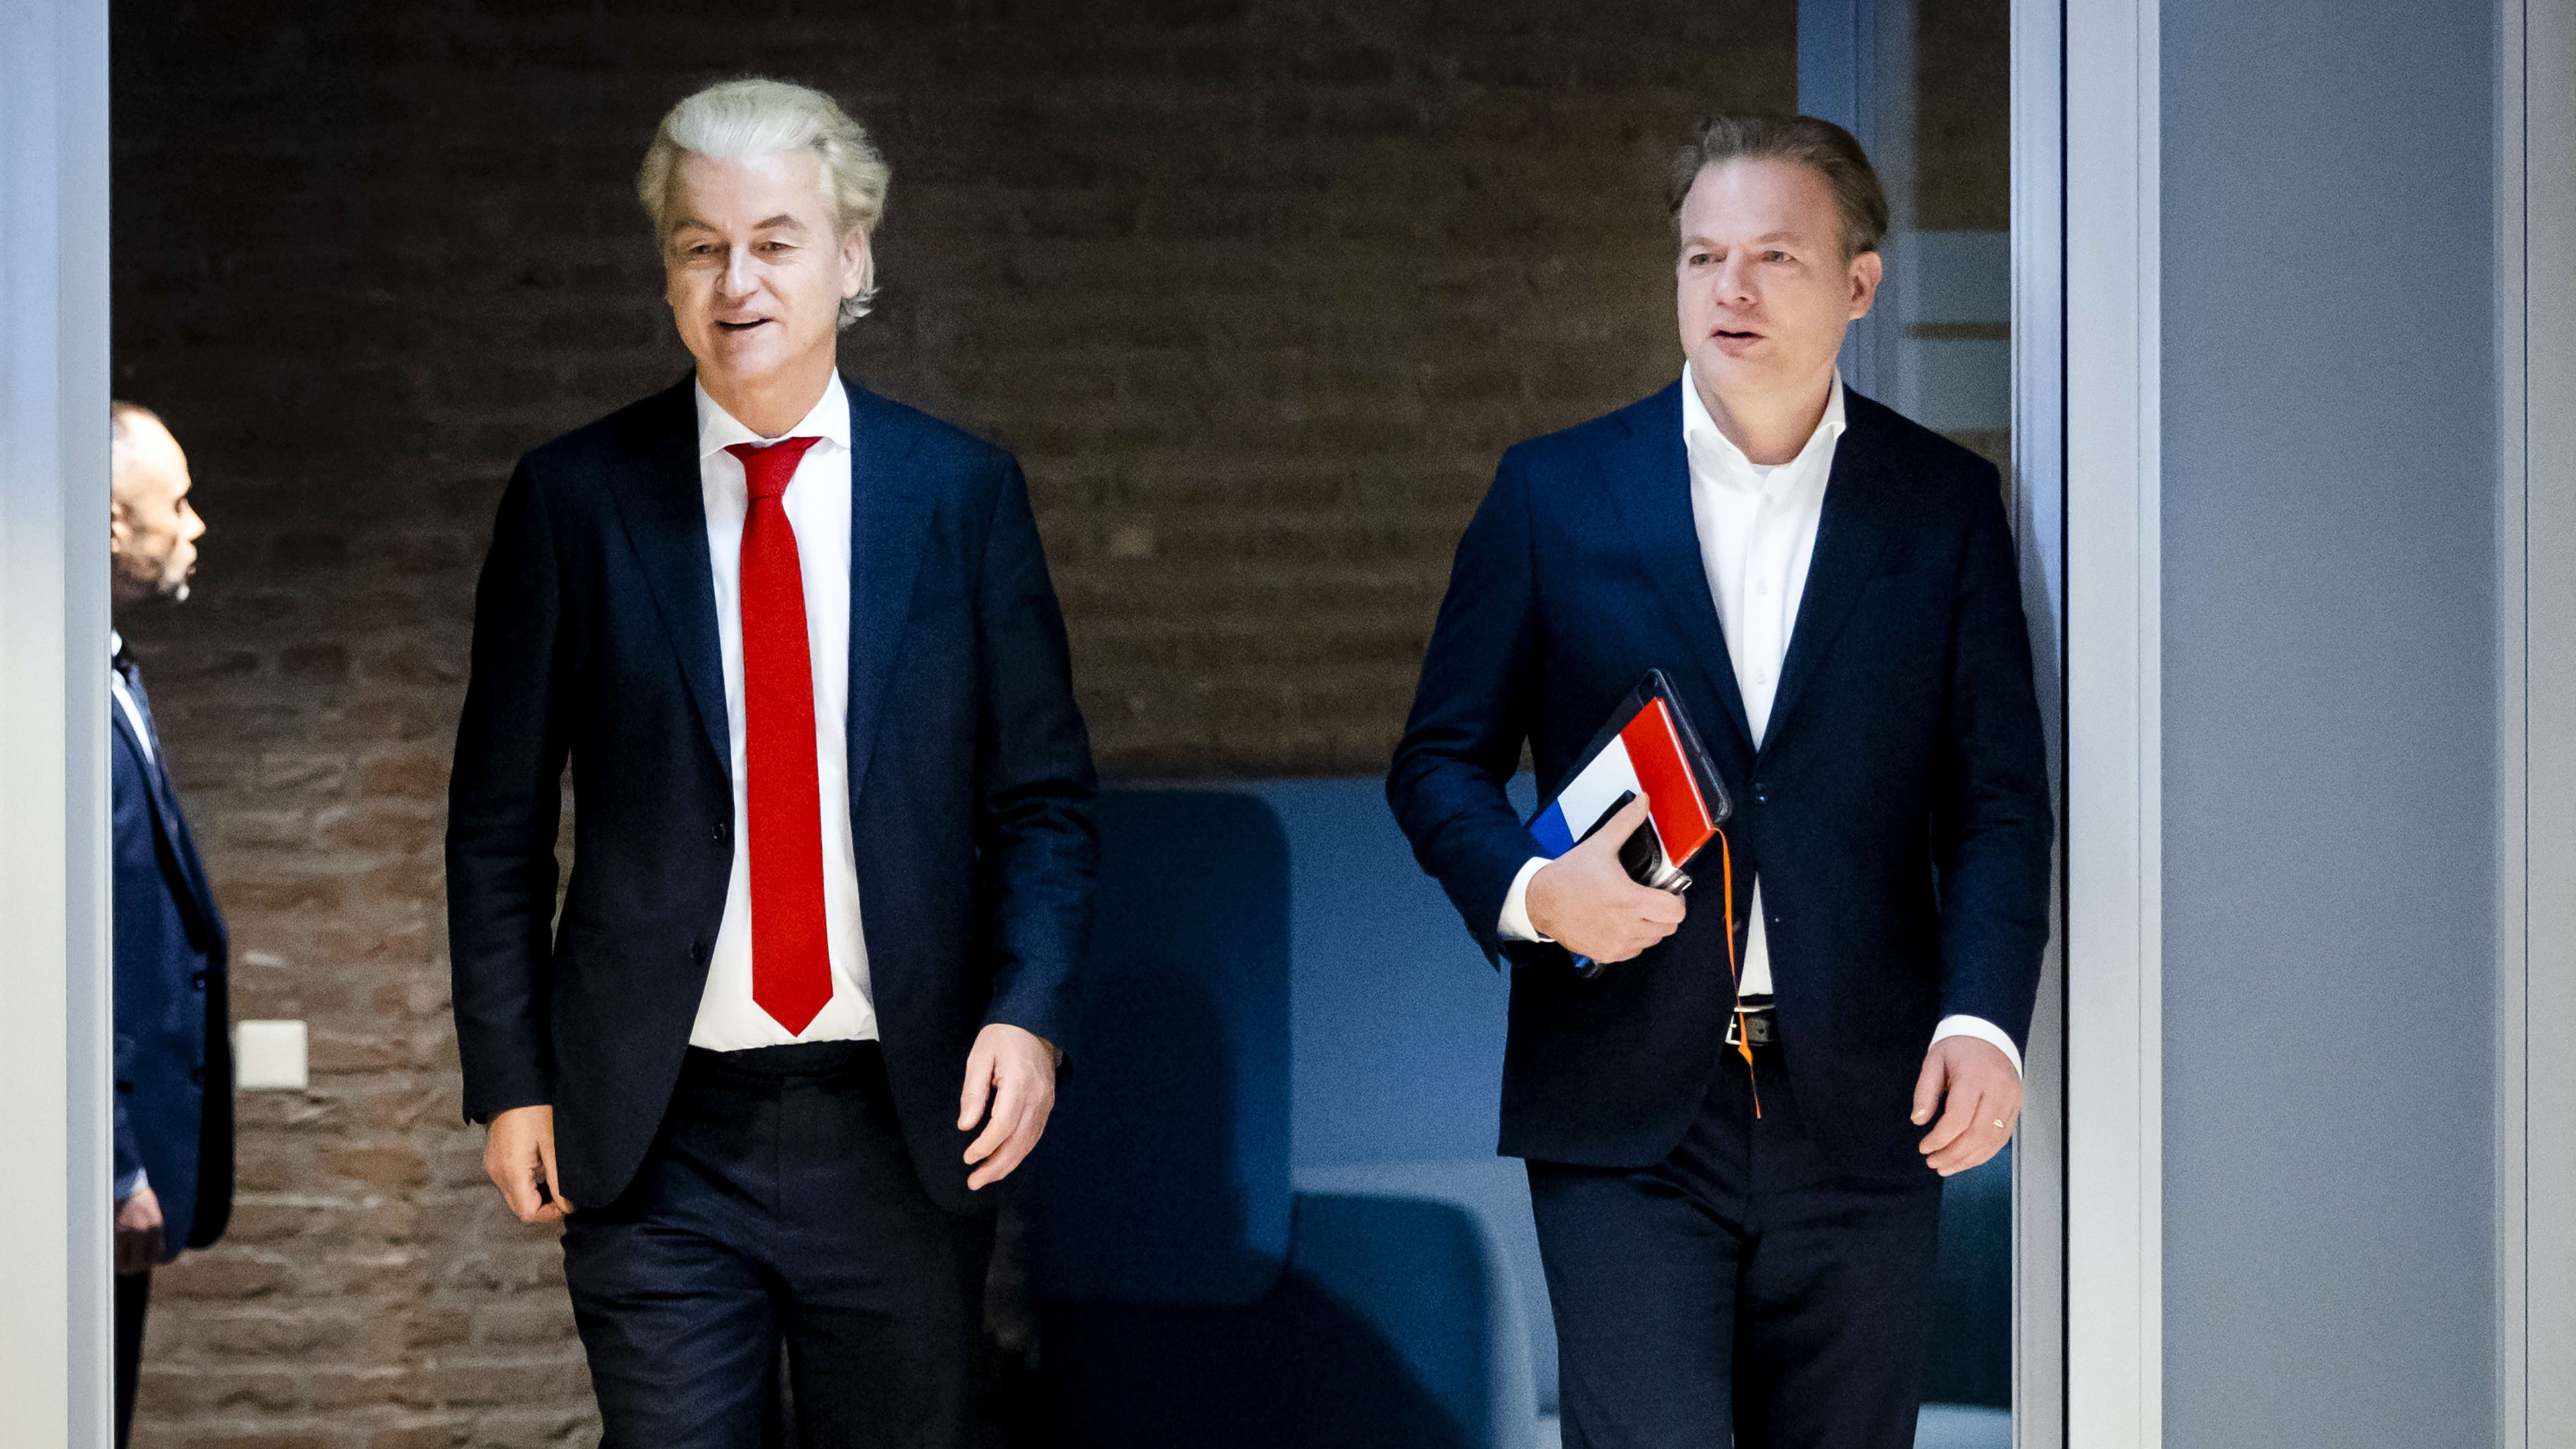 Omtzigt sust op partijcongres zorgen over samenwerking met PVV: 'Maakt u zich niet druk'